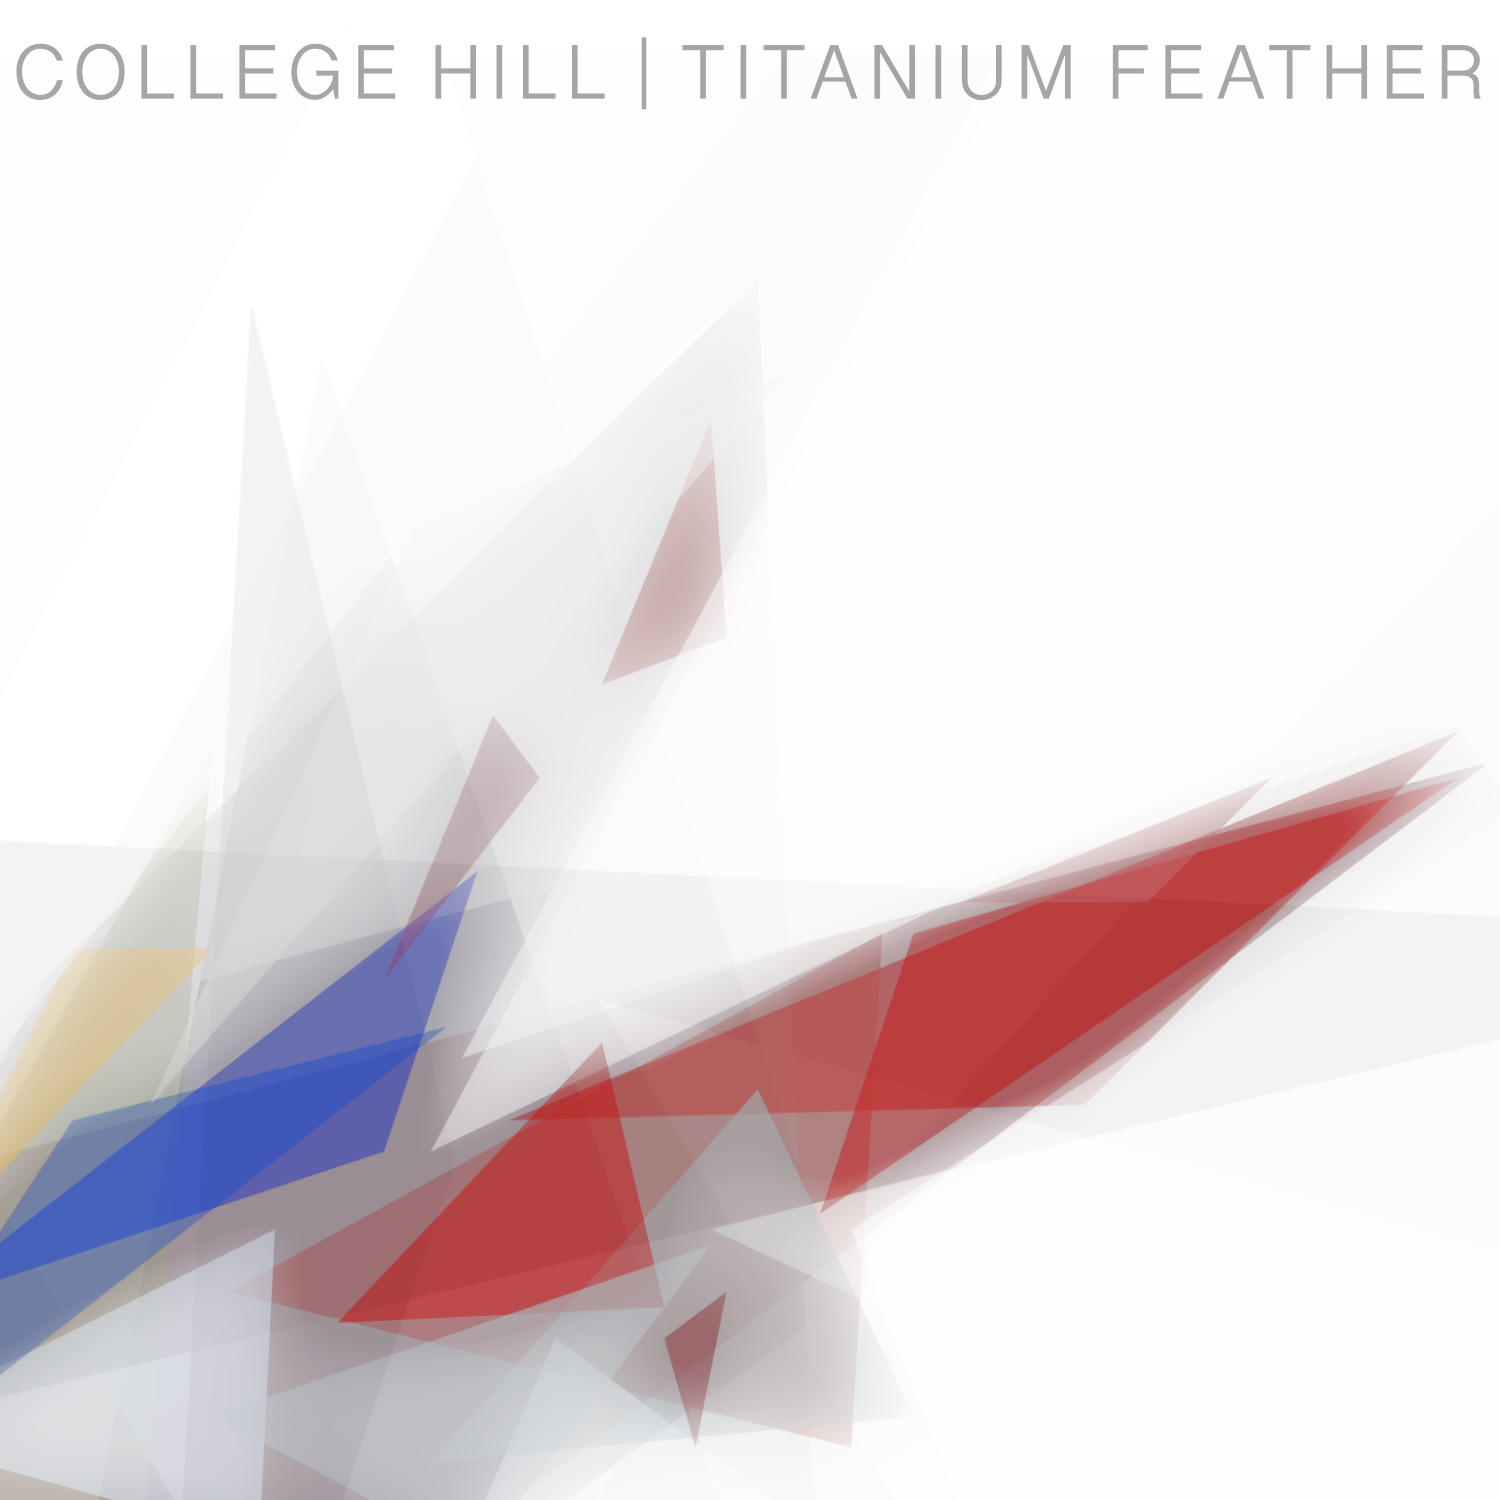 Titanium Feather